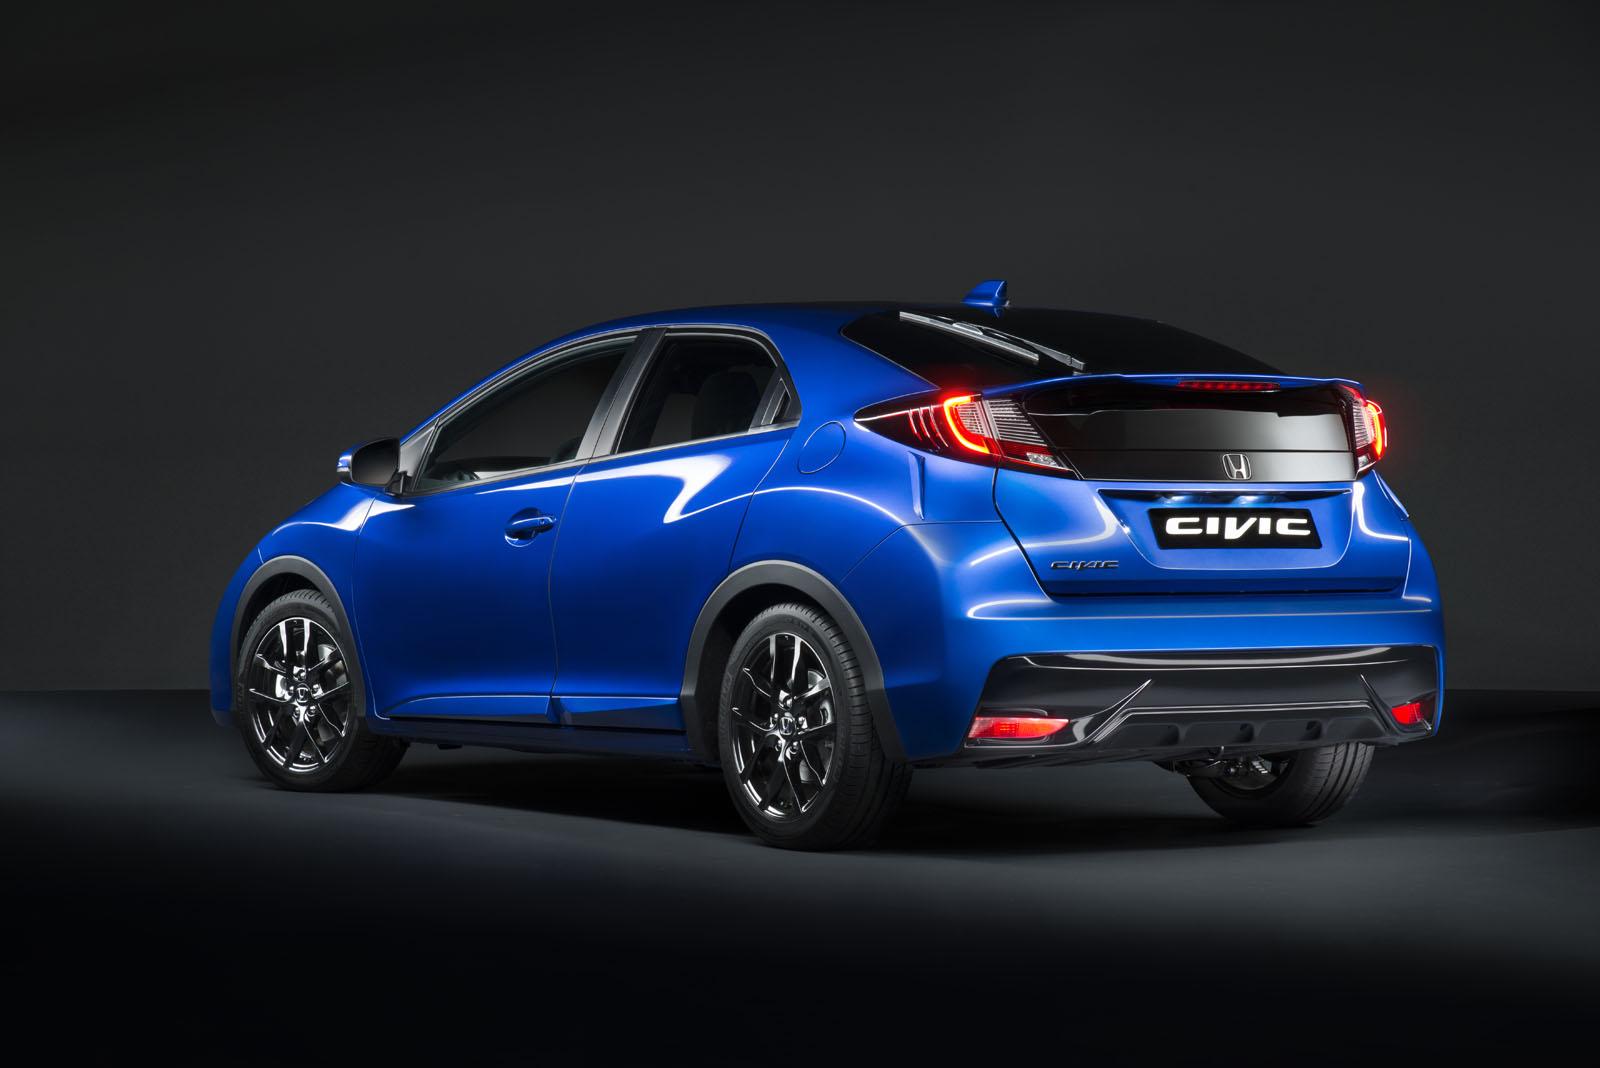 Updated 2015 Honda Civic Hatchback unveiled - ForceGT.com